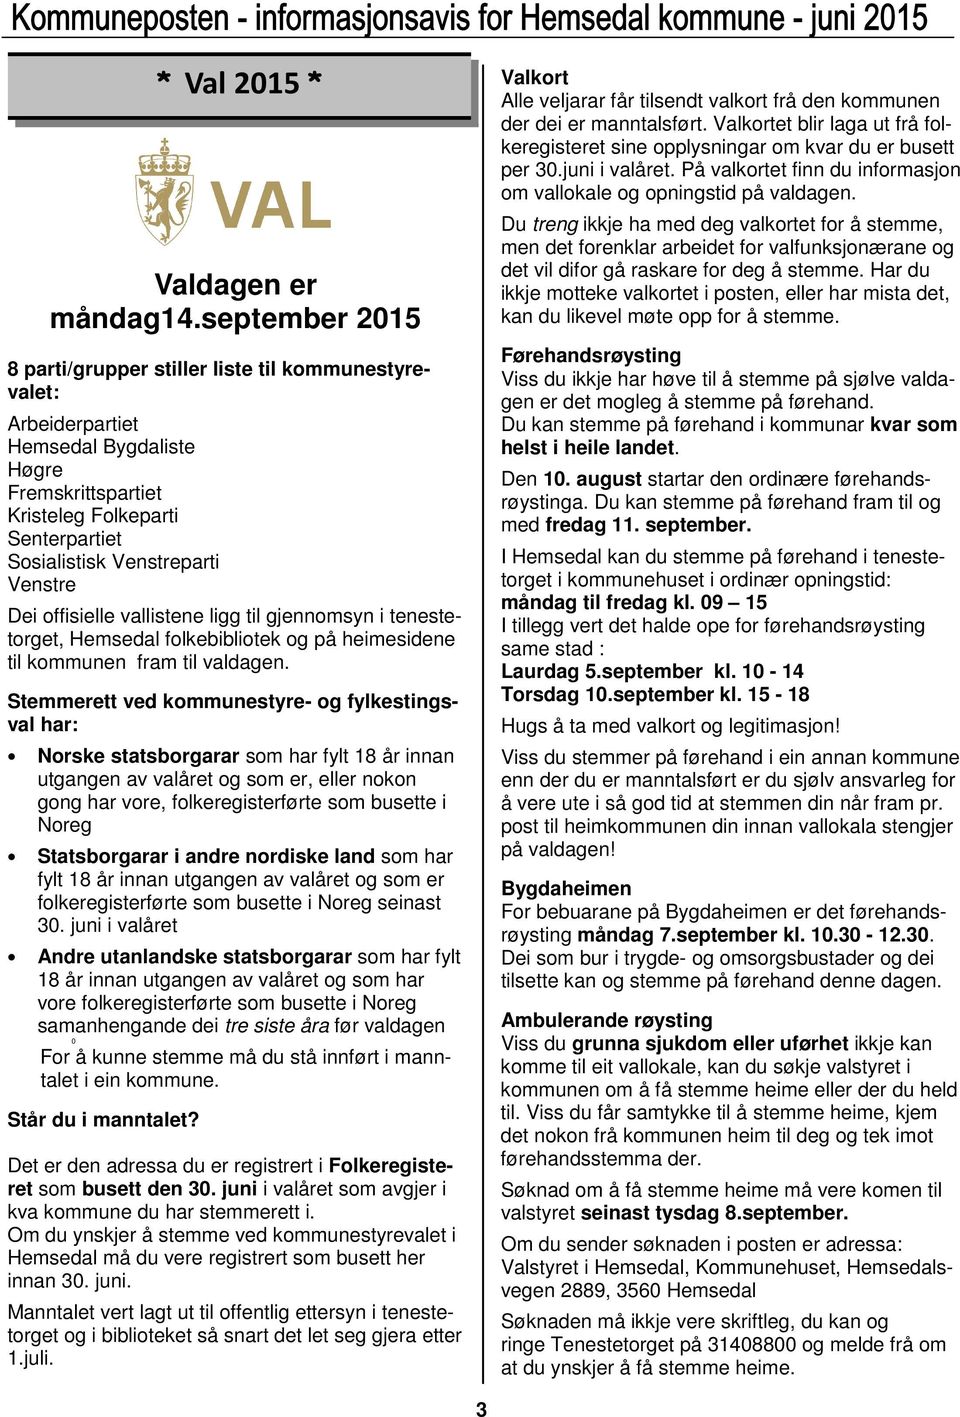 Dei offisielle vallistene ligg til gjennomsyn i tenestetorget, Hemsedal folkebibliotek og på heimesidene til kommunen fram til valdagen.